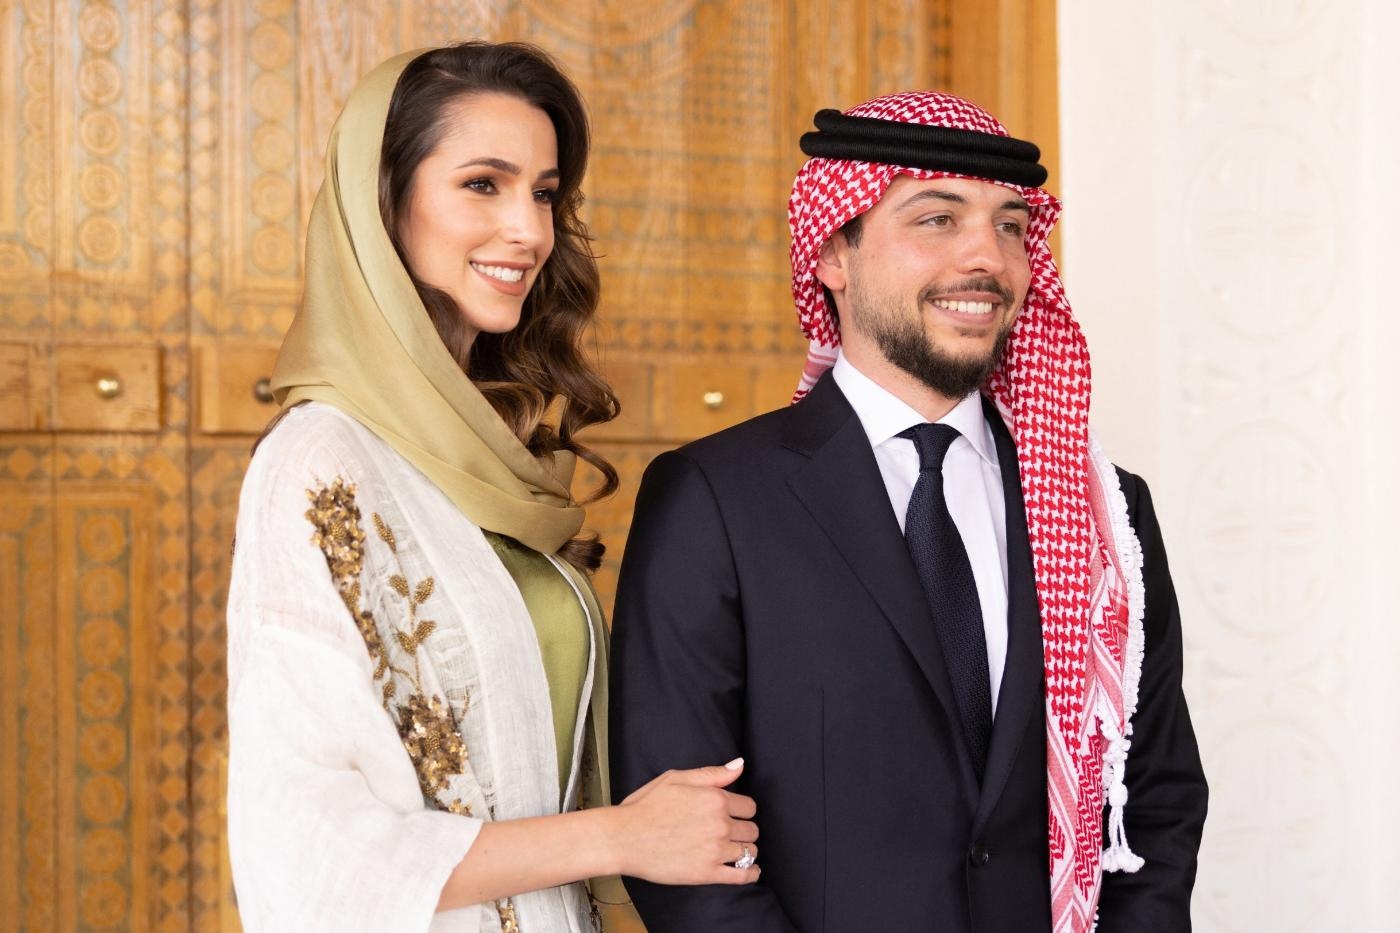 Le prince héritier de Jordanie, Hussein ben Abdallah, s’est fiancé à Rajwa al-Saif à Riyad le 17 août 2022 (Balkis Press via Reuters)